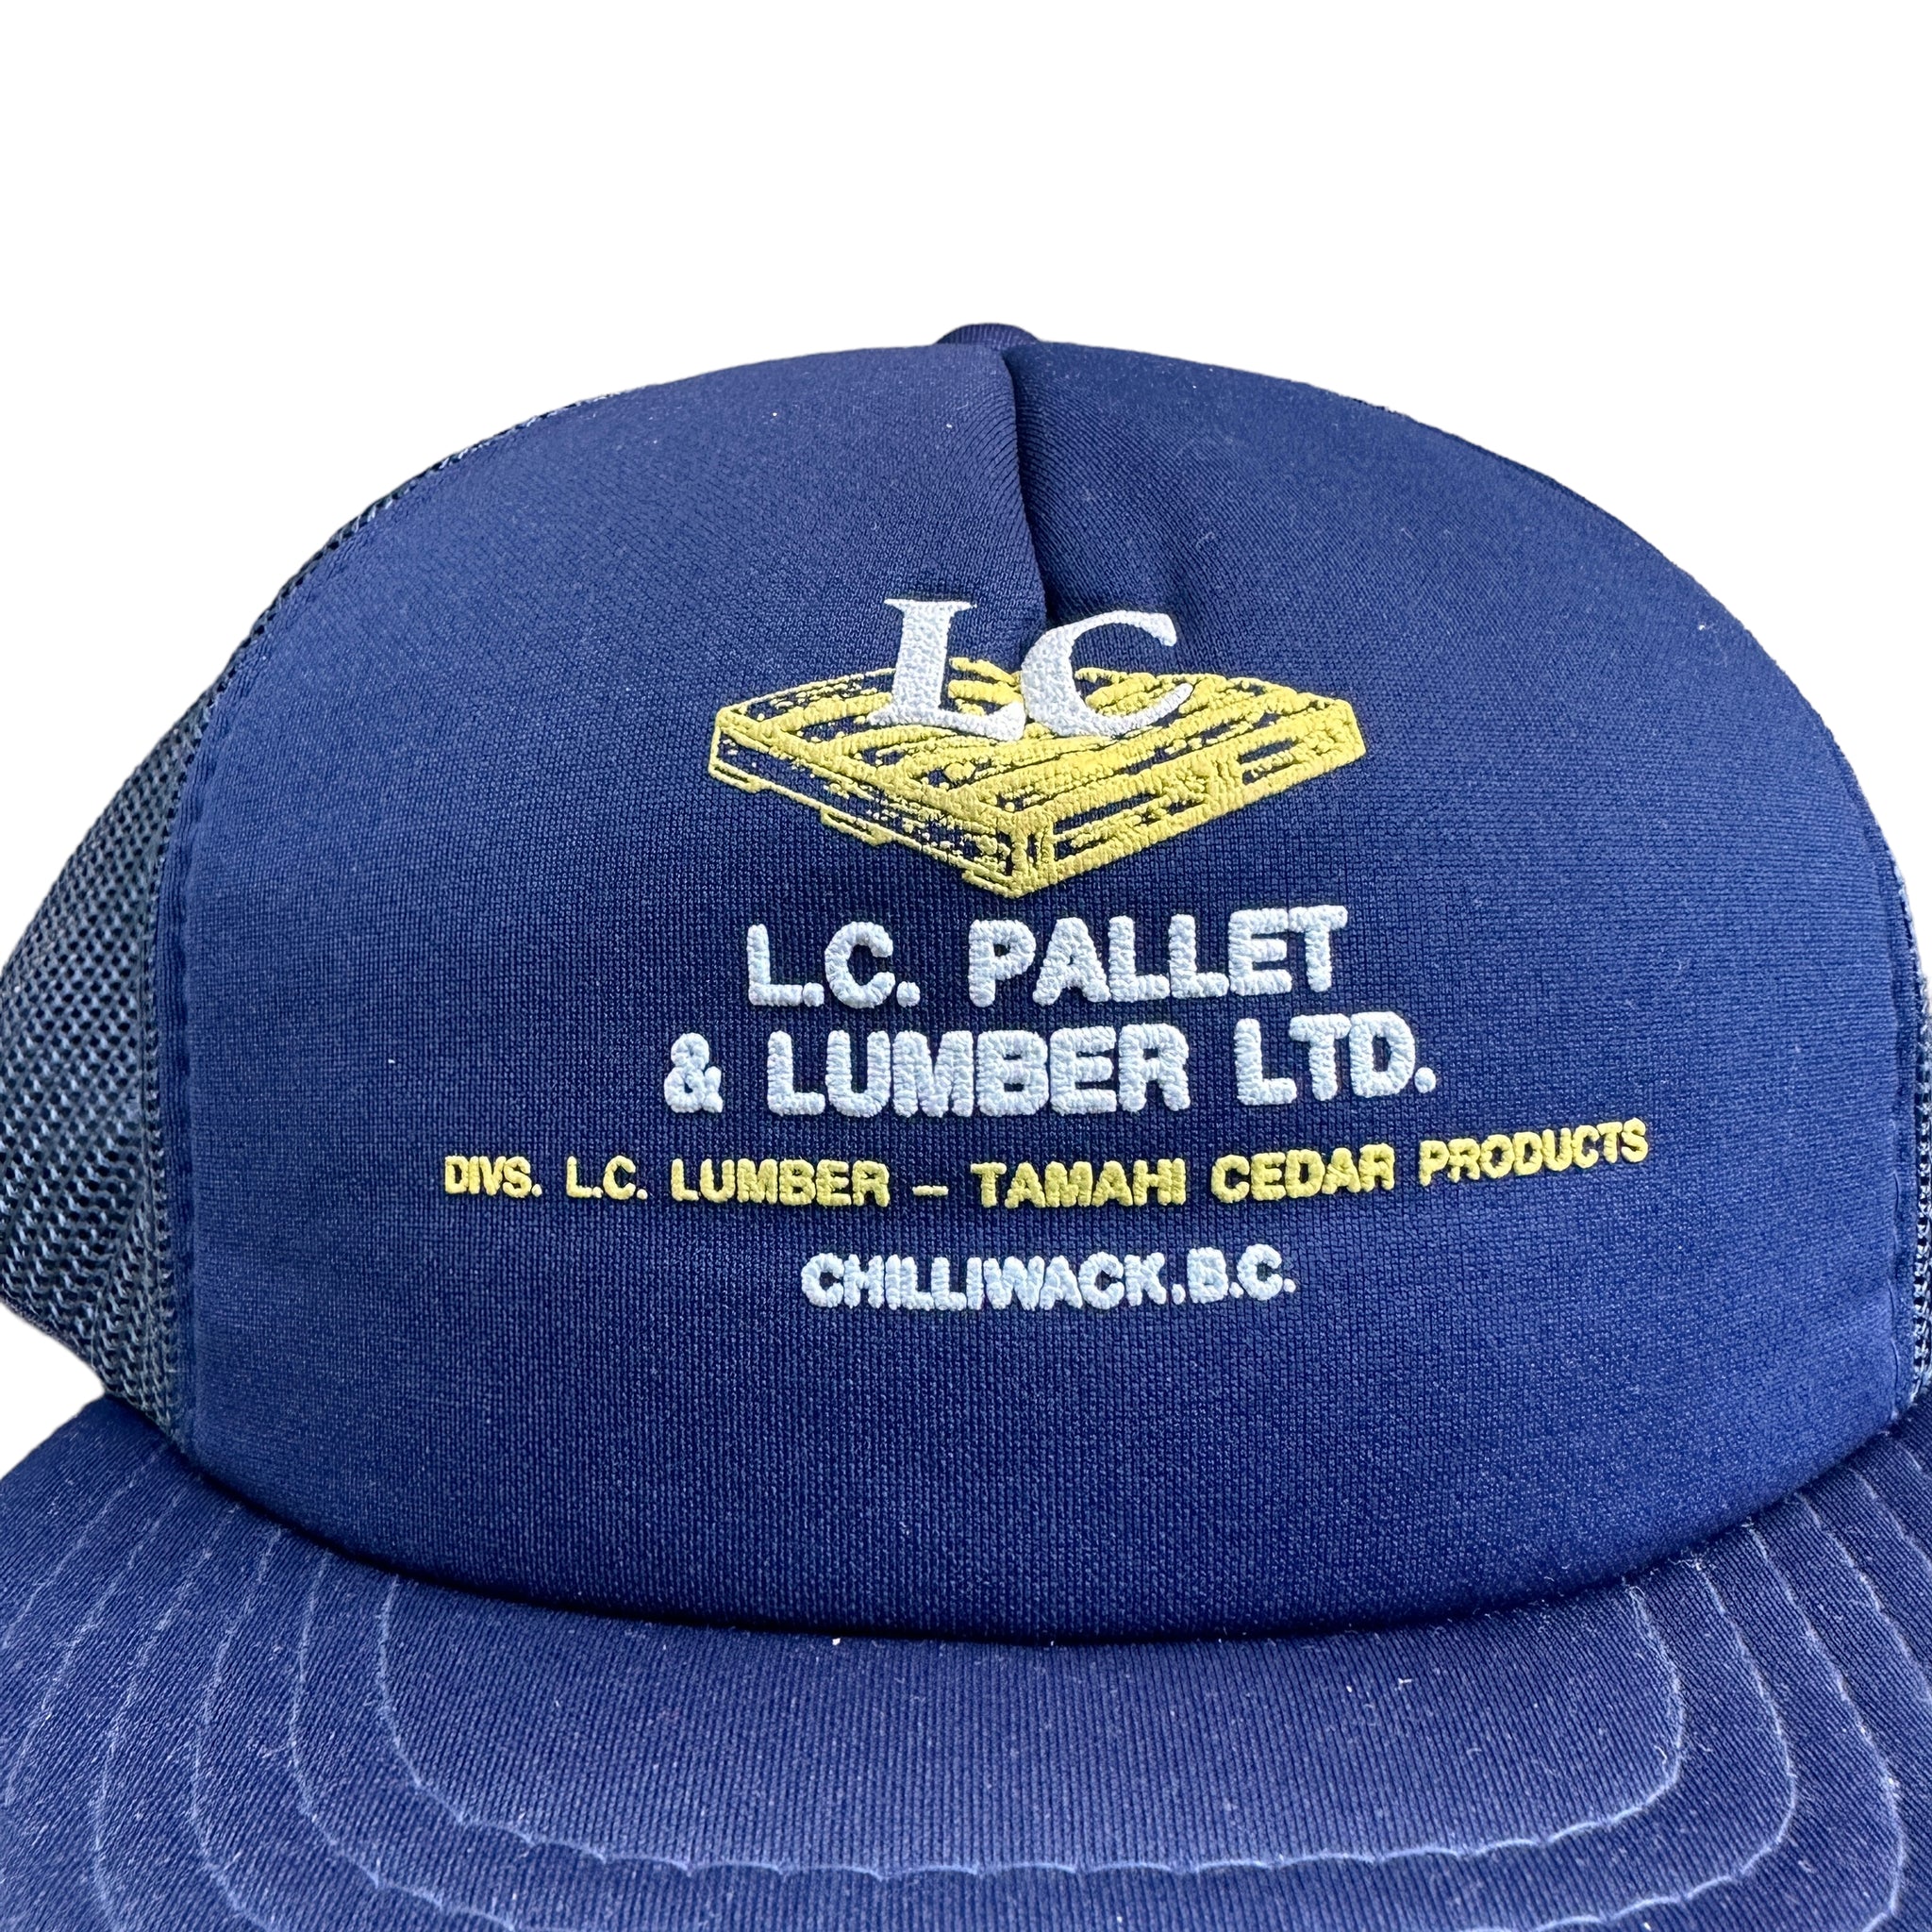 LC Pallet trucker hat